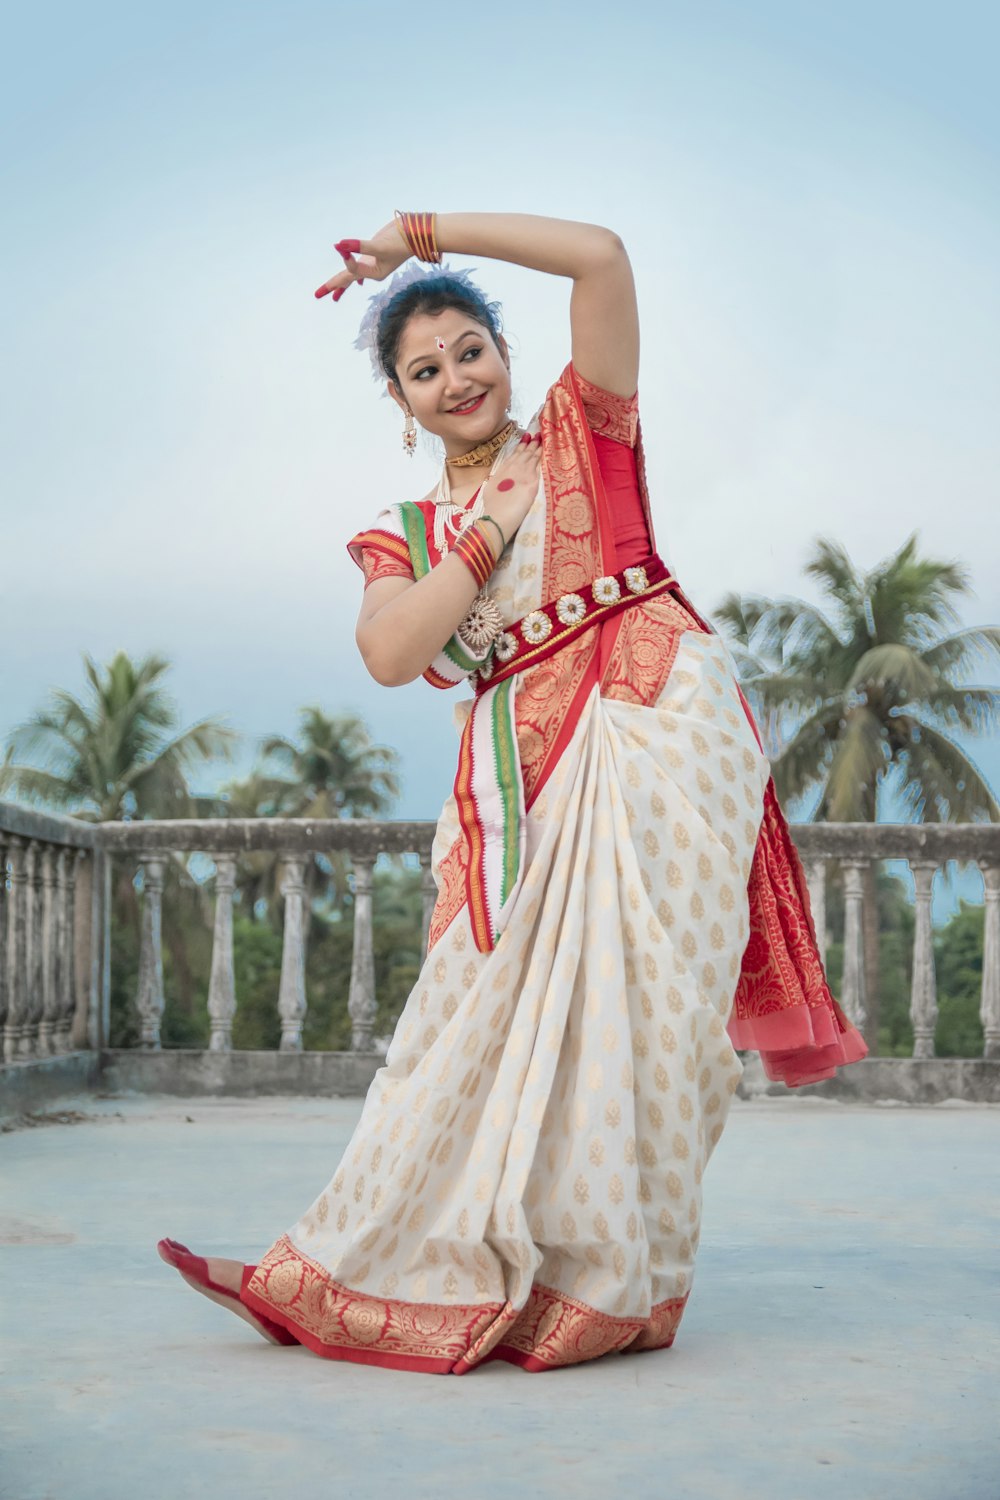 mulher em sari vermelho e branco de pé no chão de concreto cinzento durante o dia